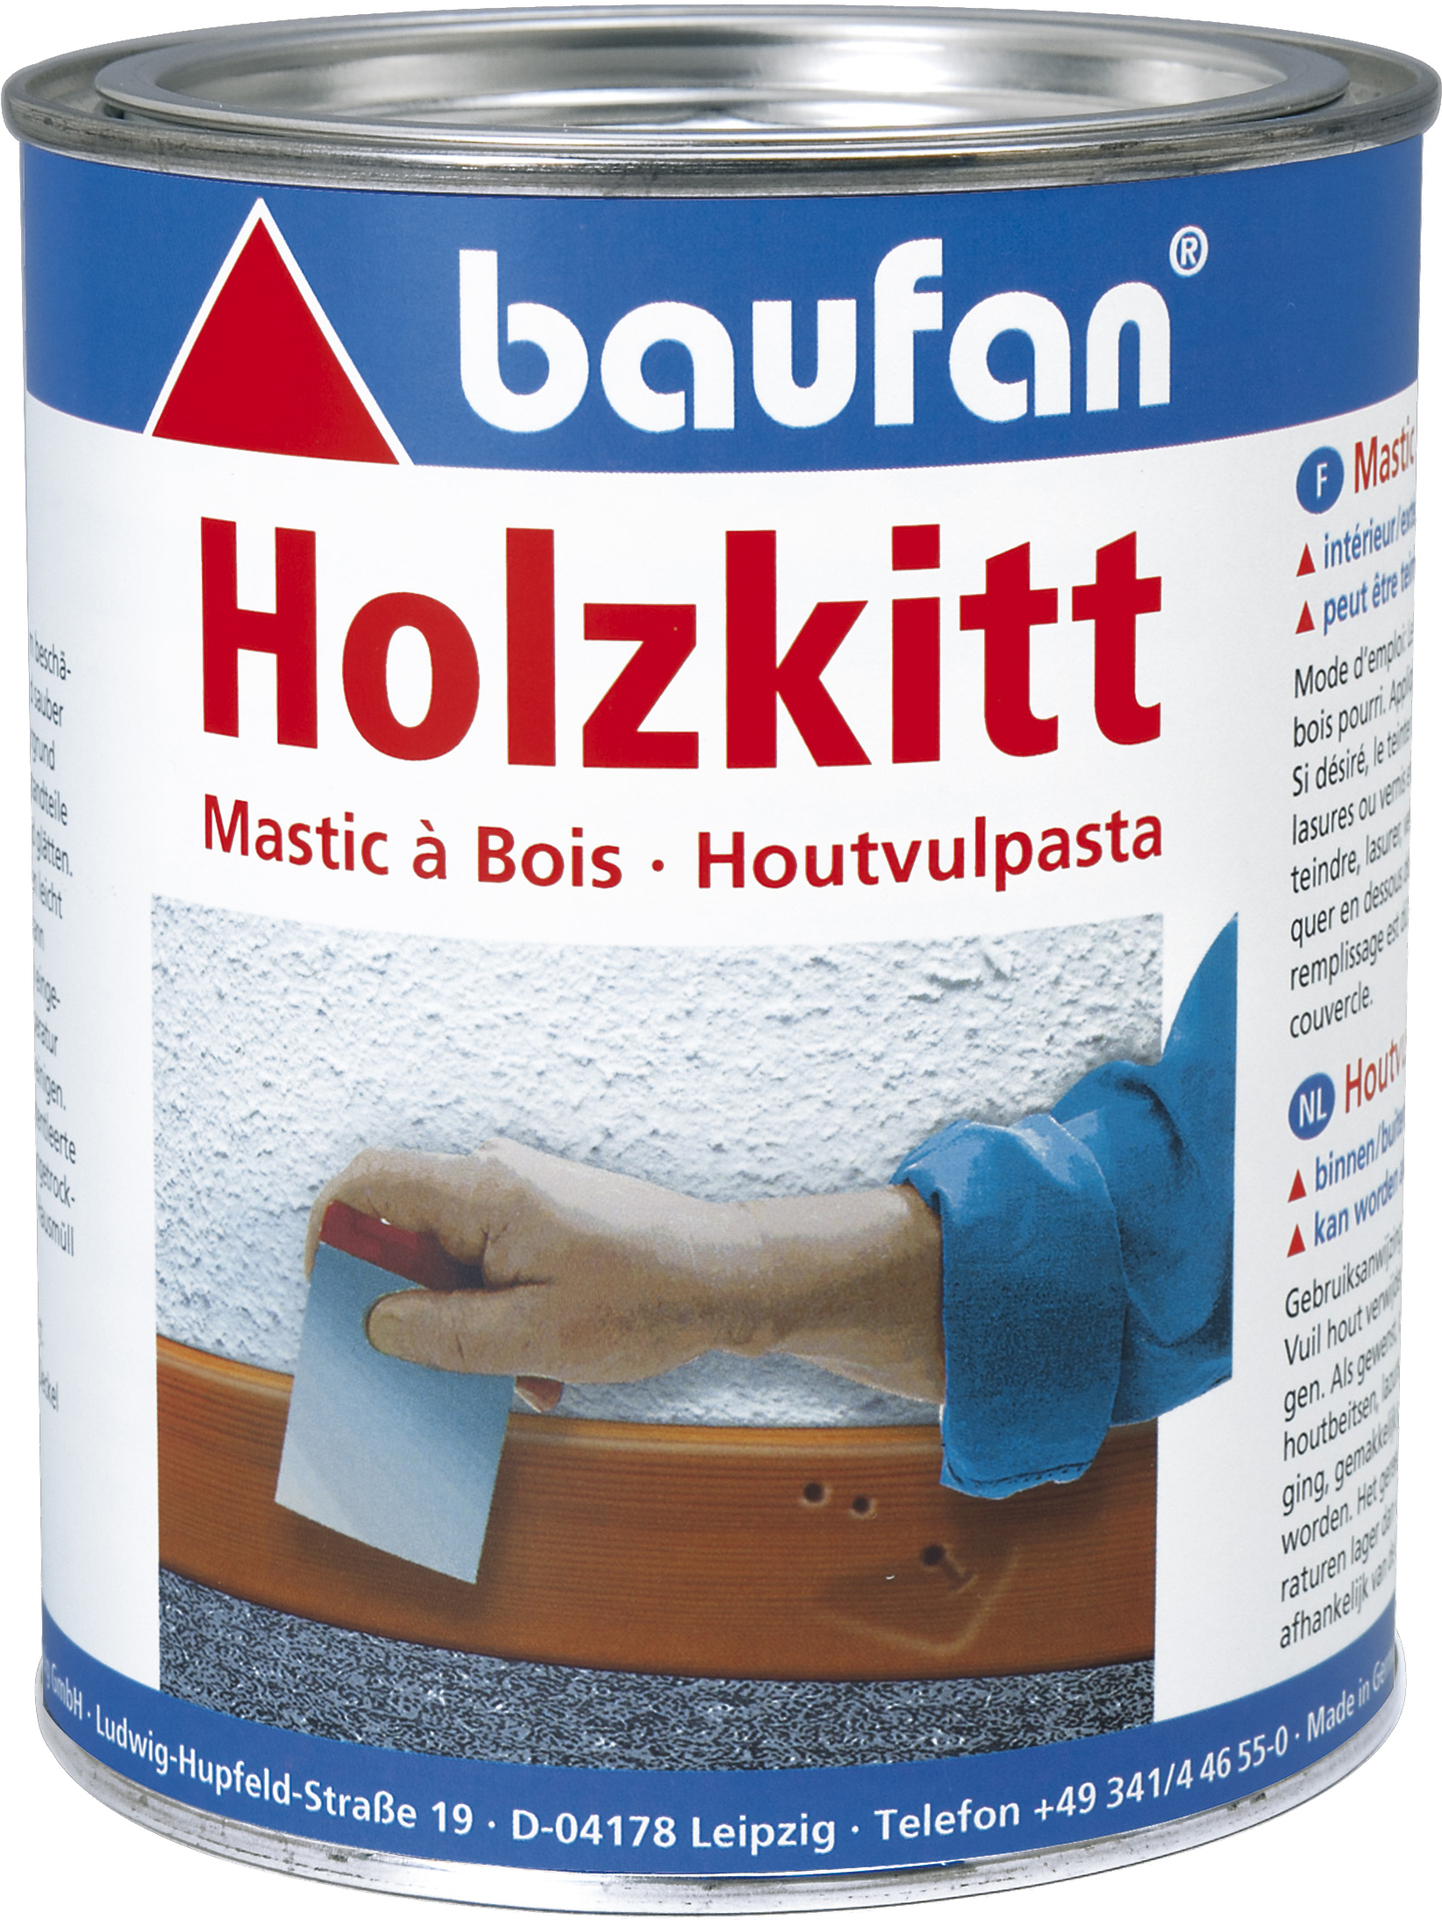 Baufan Holzkitt